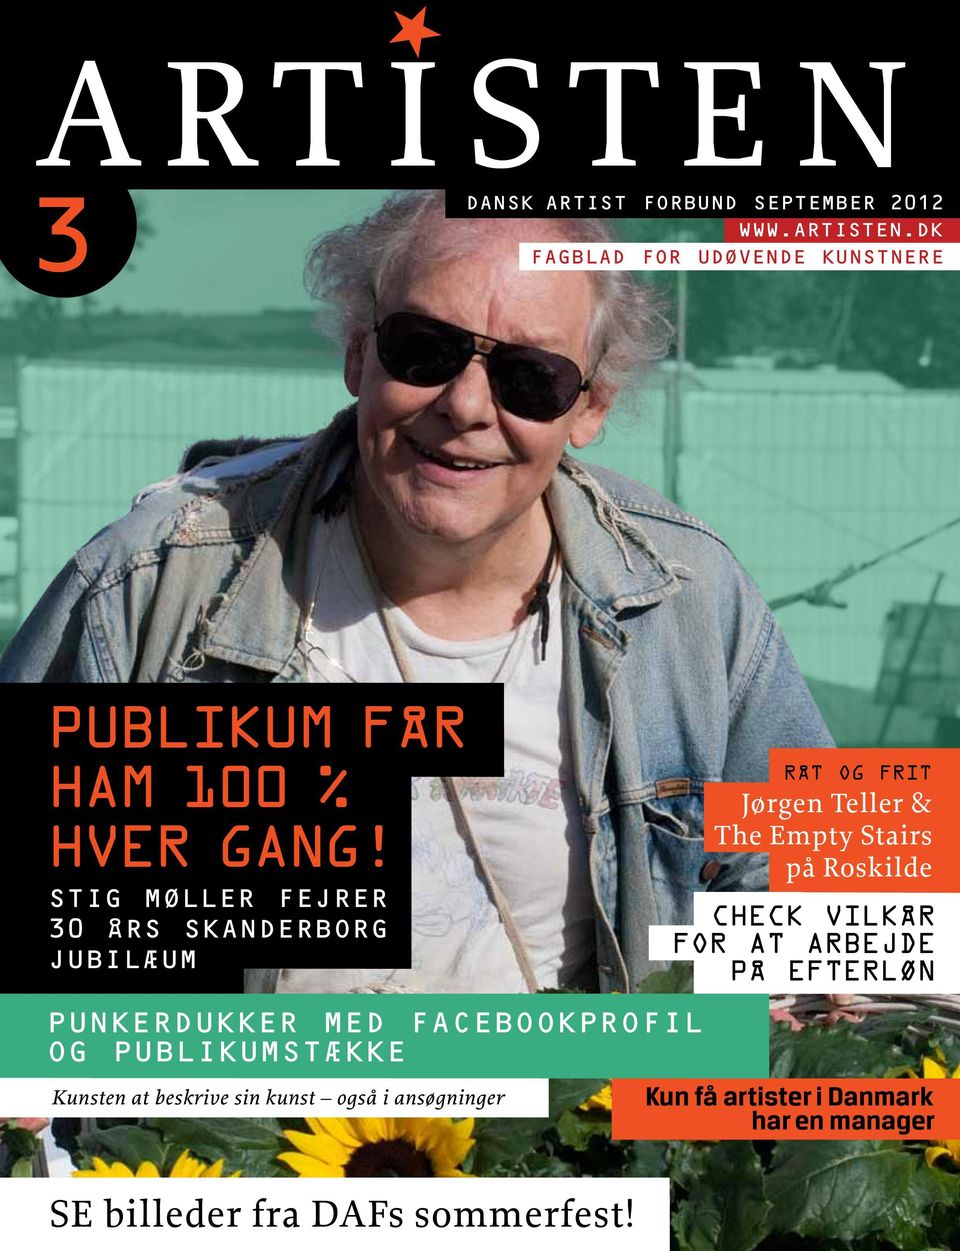 Stig Møller fejrer 30 års Skanderborg jubilæum punkerdukker med facebookprofil og publikumstække Kunsten at